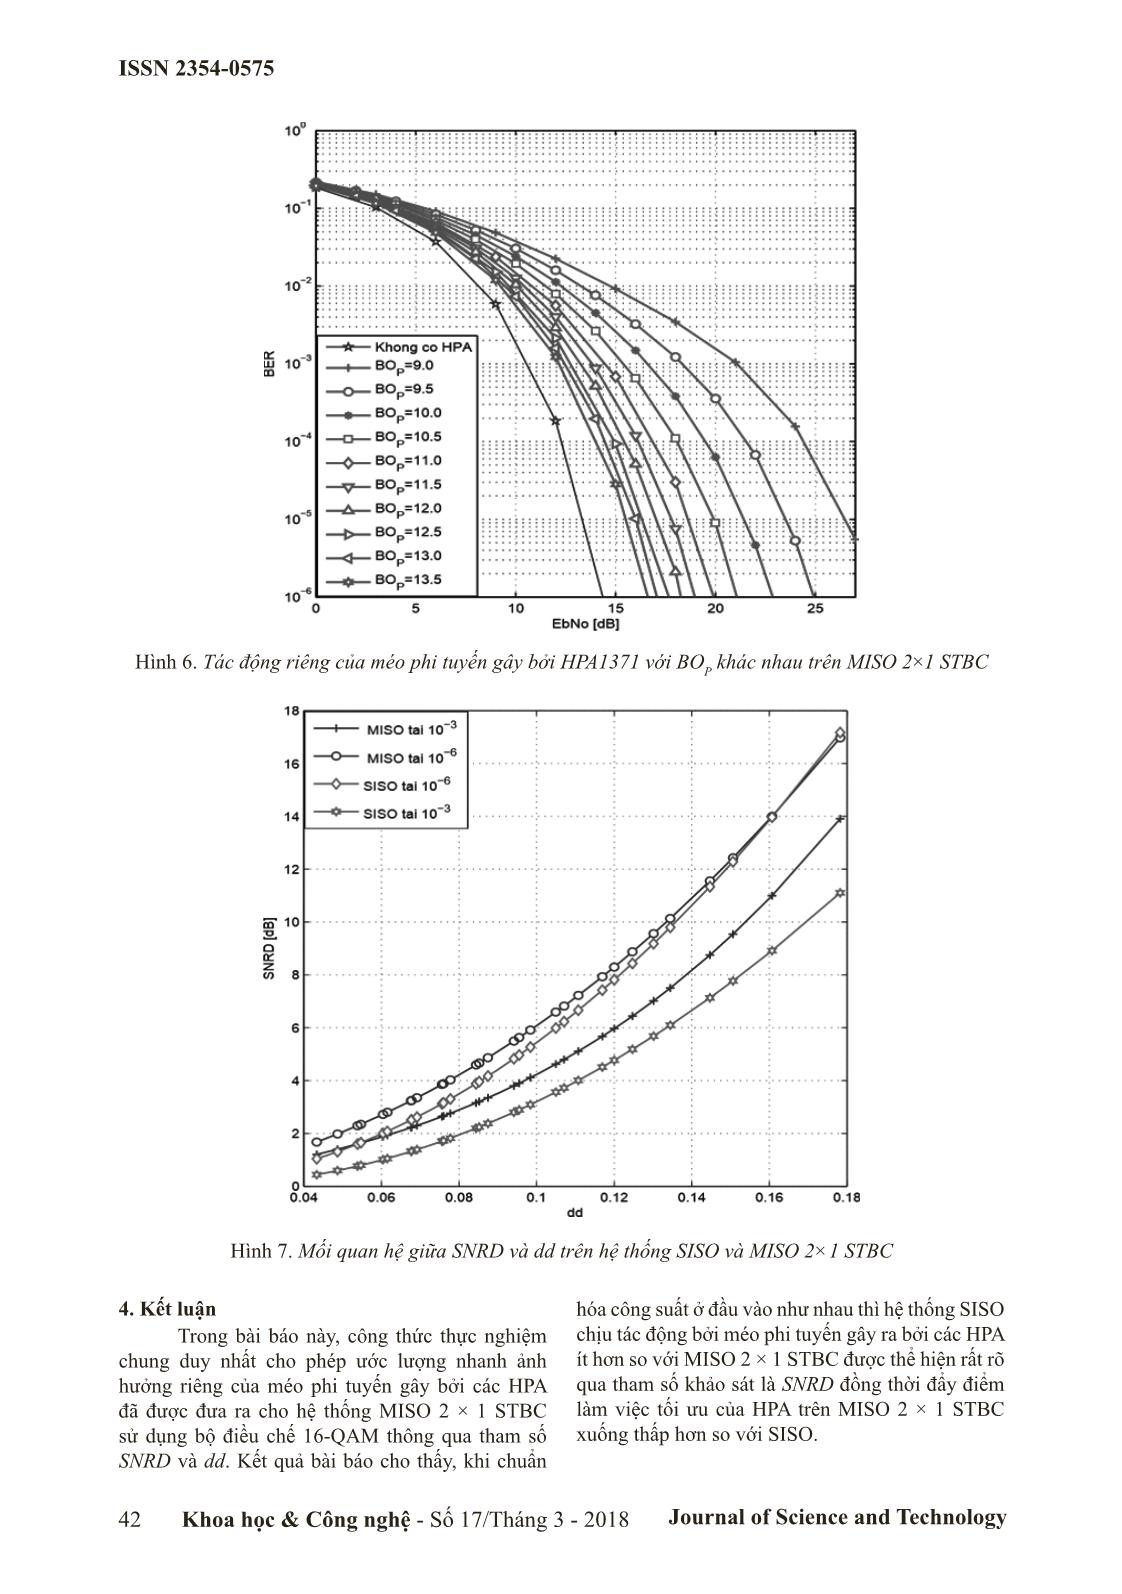 Đánh giá tác động riêng của méo phi tuyến gây bởi hpa trong hệ thống MISO 2×1 STBC trang 5